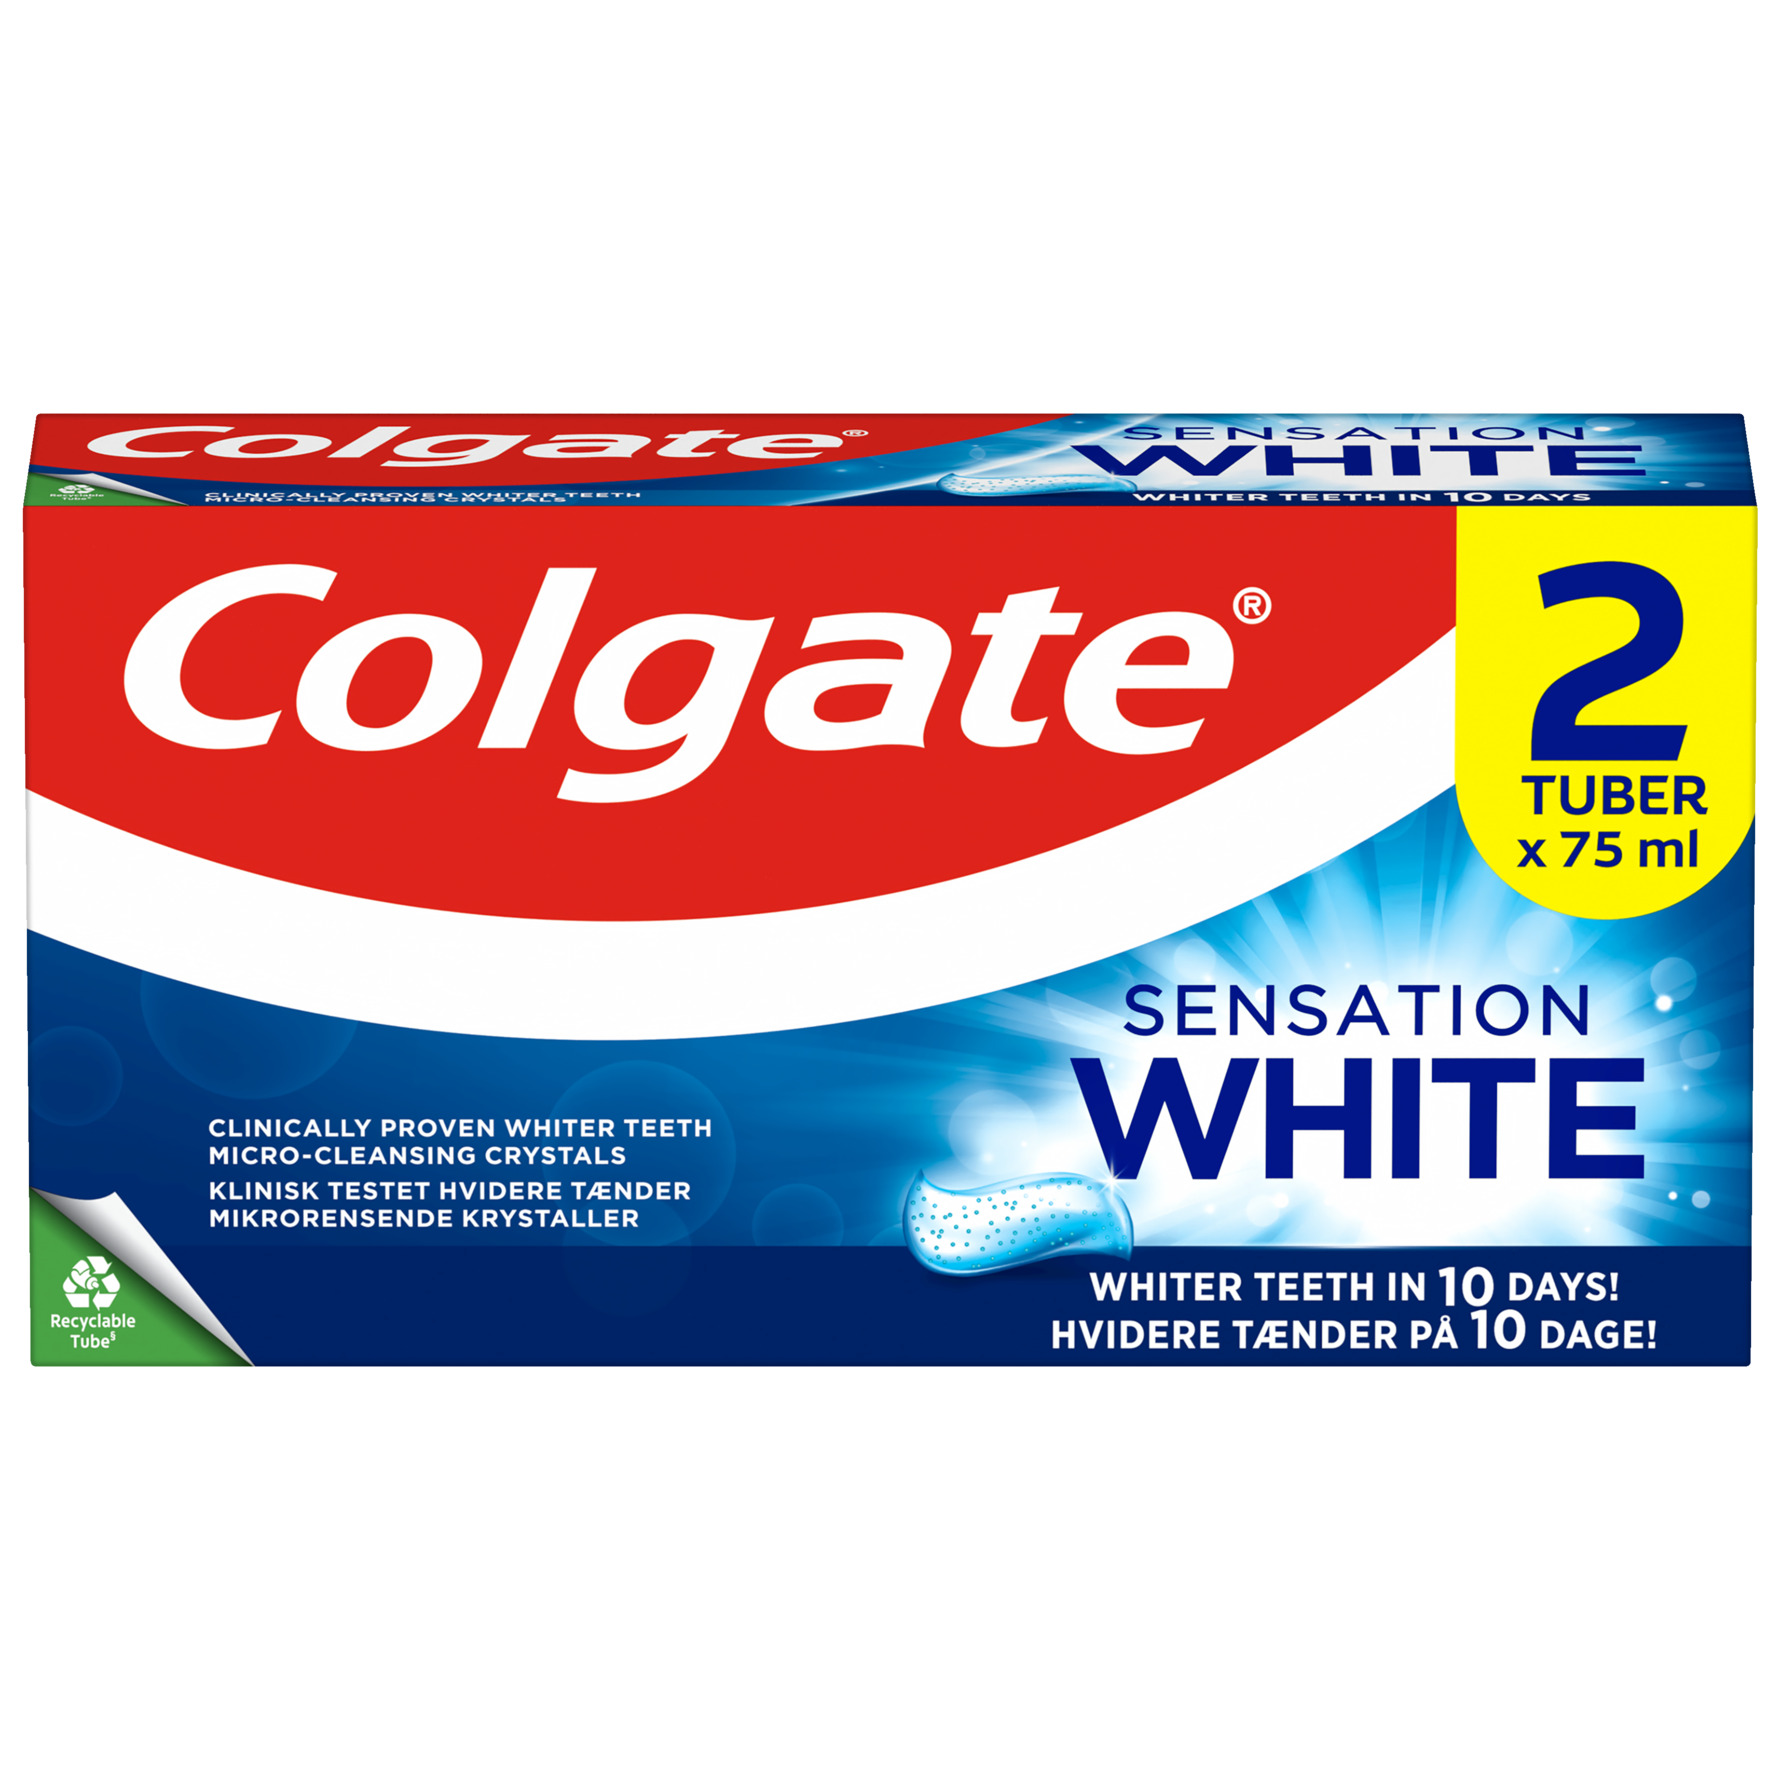 gerningsmanden Pudsigt indarbejde Colgate tandpleje produkter - Se tilbud og køb hos Matas